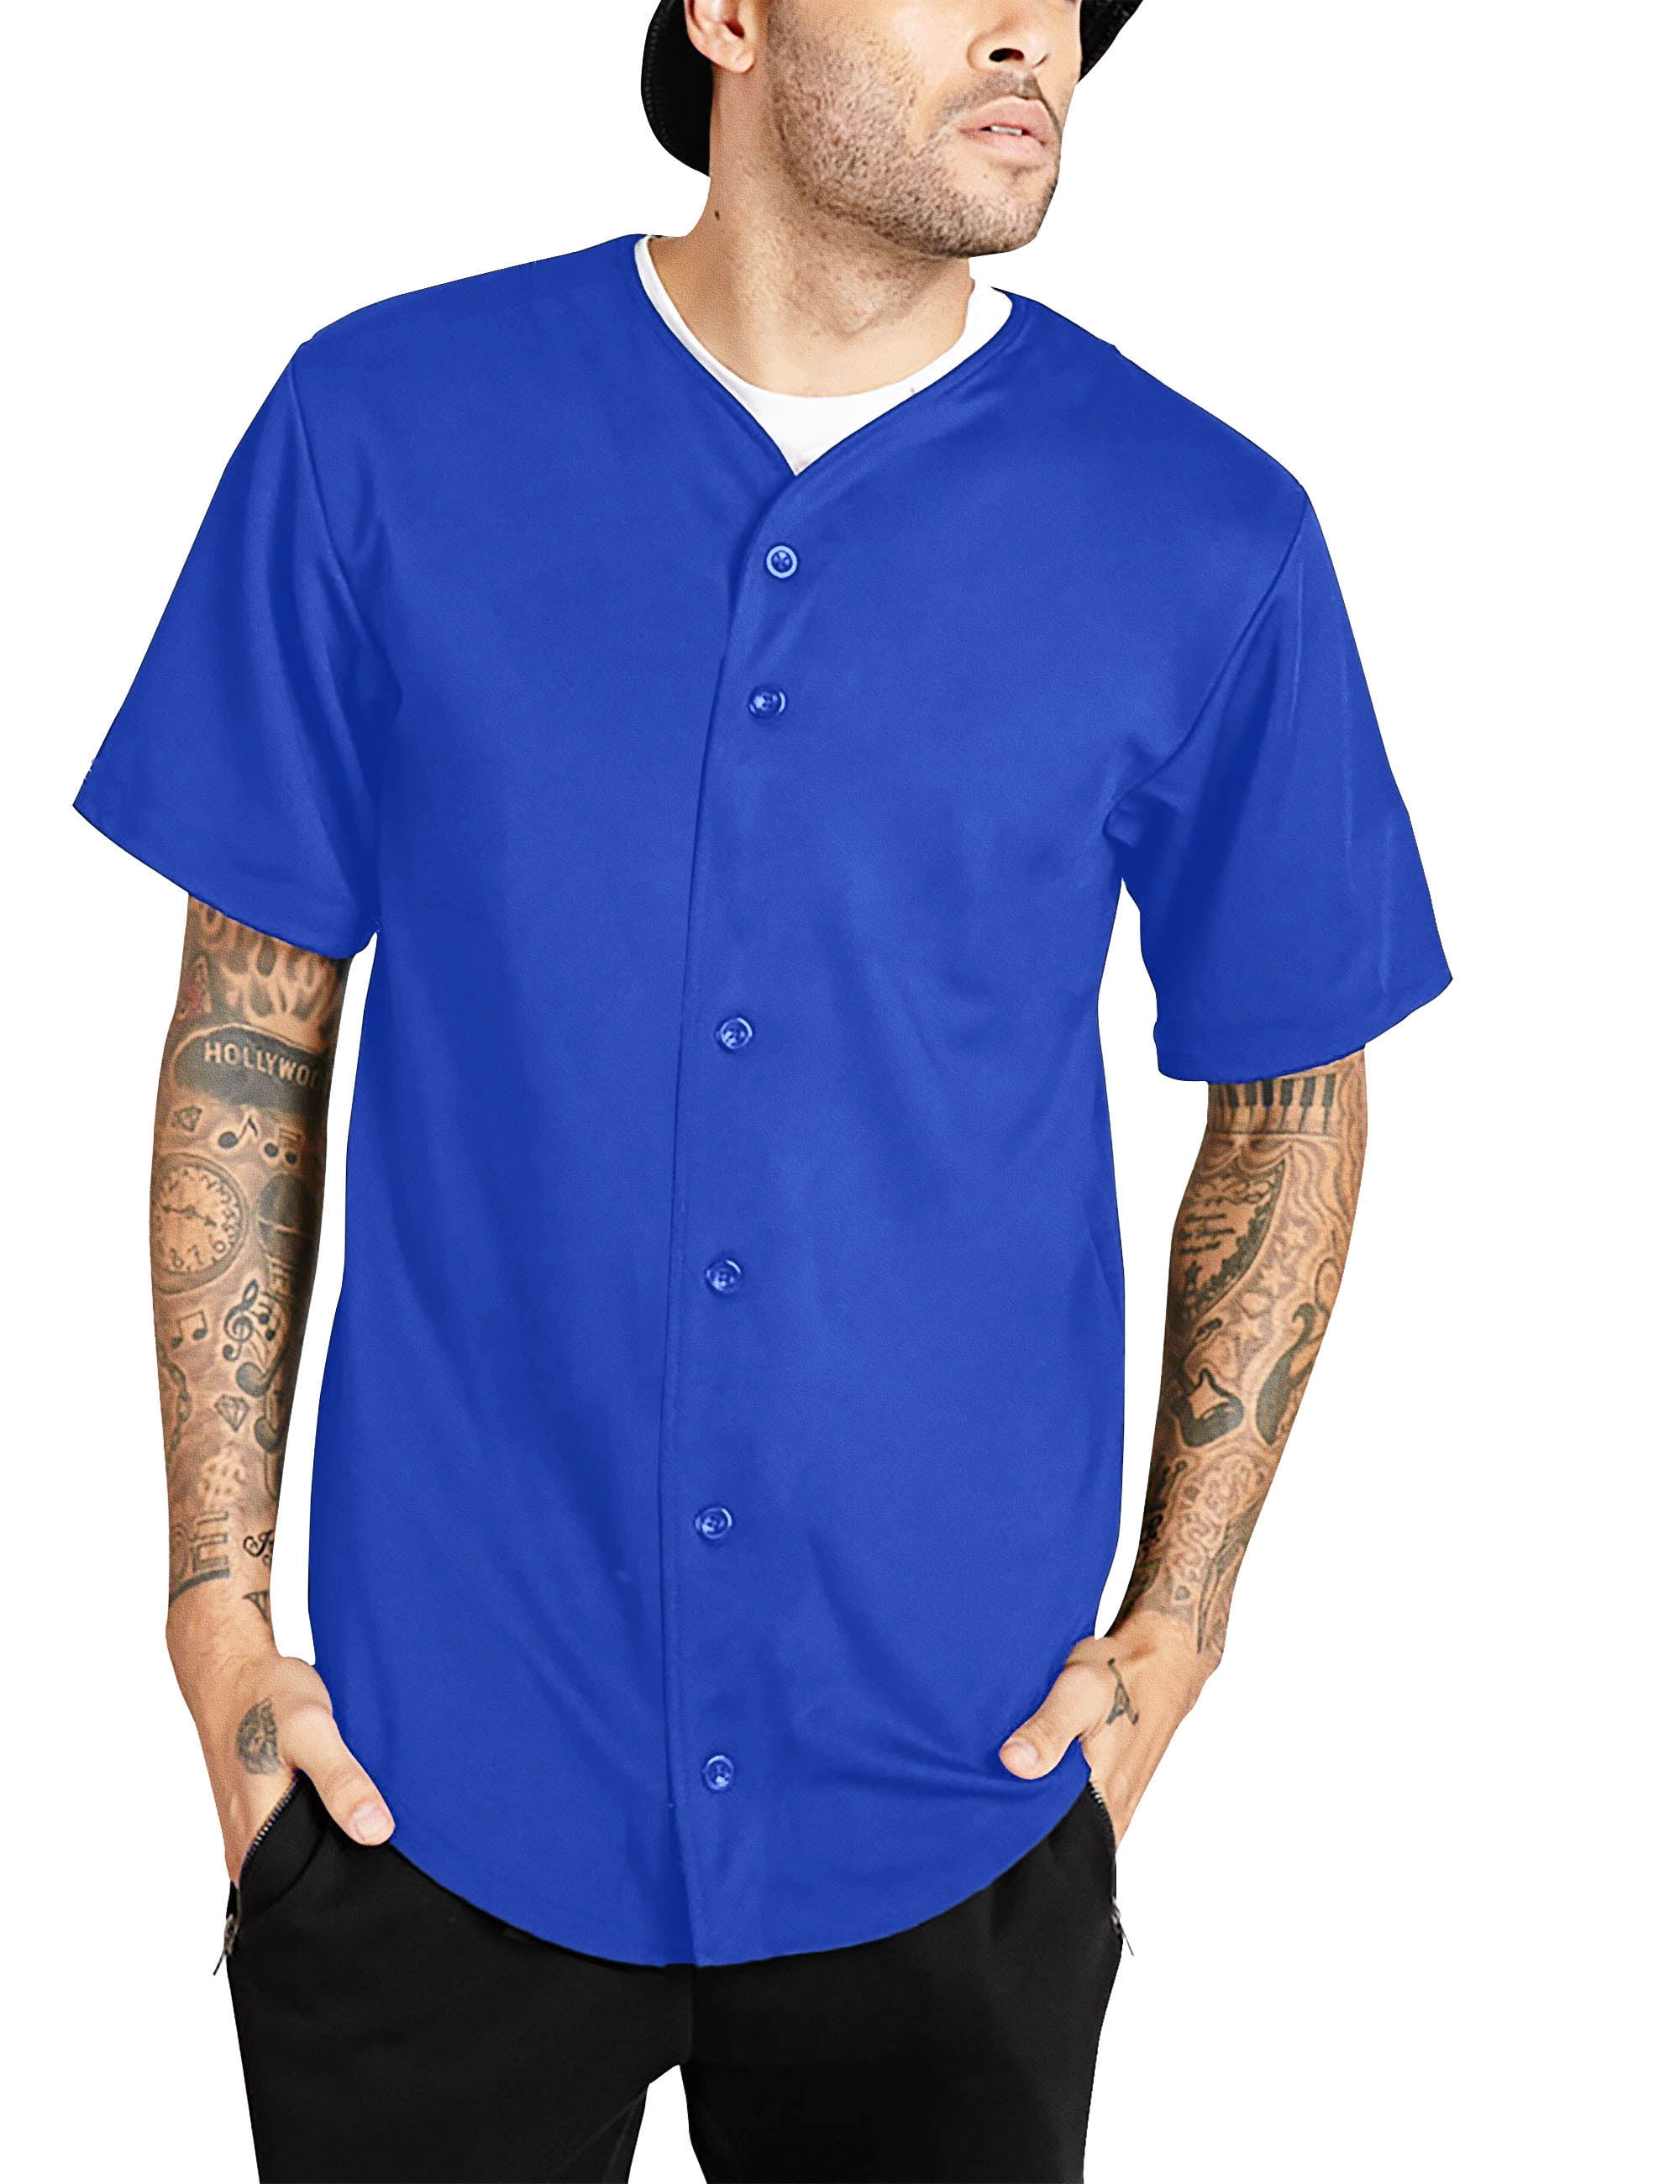 Weiv Gear Men’s Baseball Jersey Button Down Short Sleeve T-Shirts Active Team Sports Uniforms Plain Tee Hipster Top